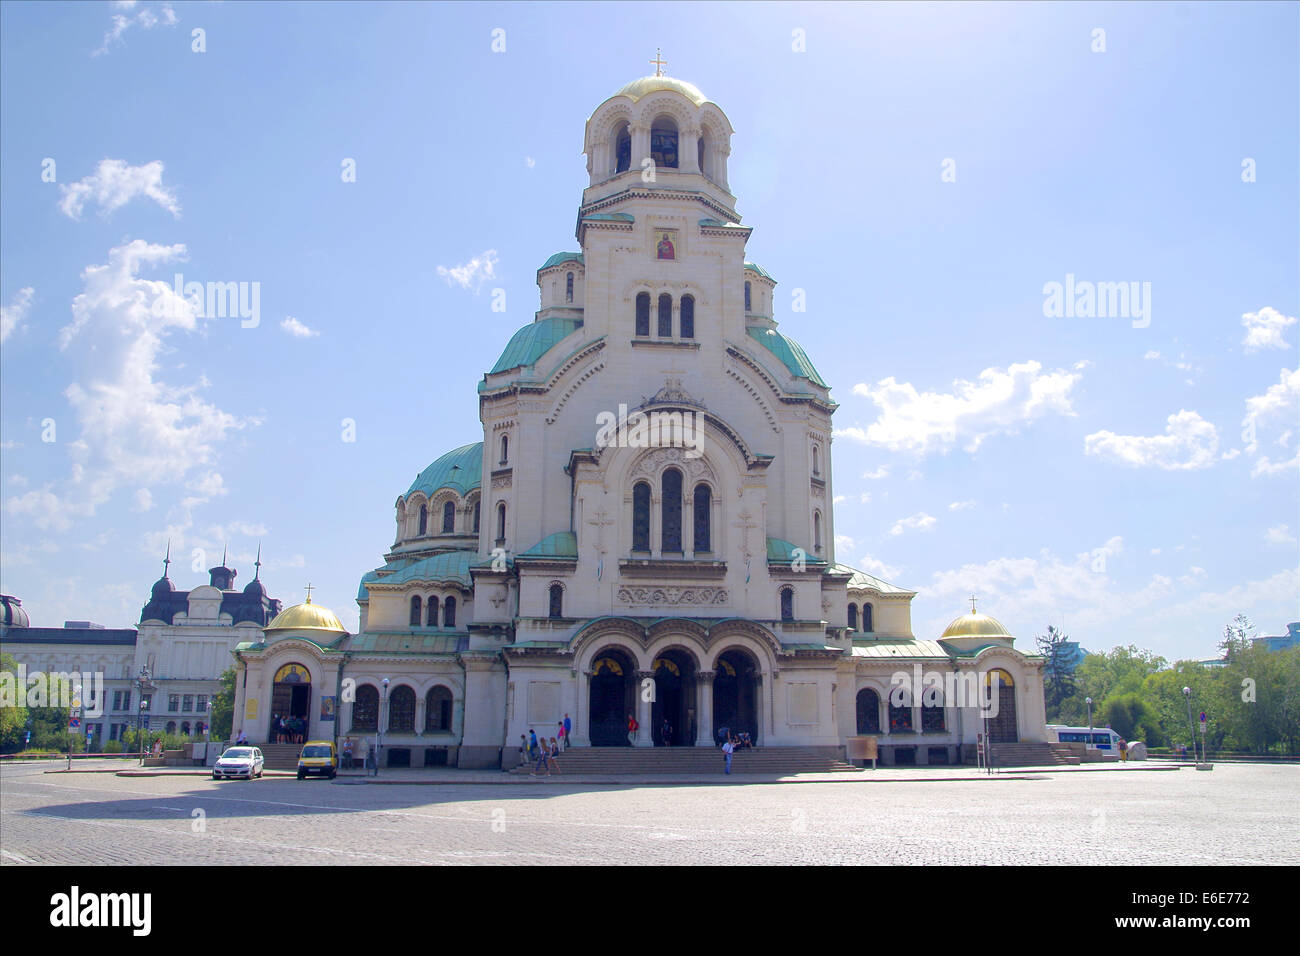 Dom "St. Alexander Nevsky" ist die orthodoxe Kirche in Sofia, eine Kathedrale des bulgarischen Patriarchen. Der Tempel wurde mit Tra erhoben. Stockfoto